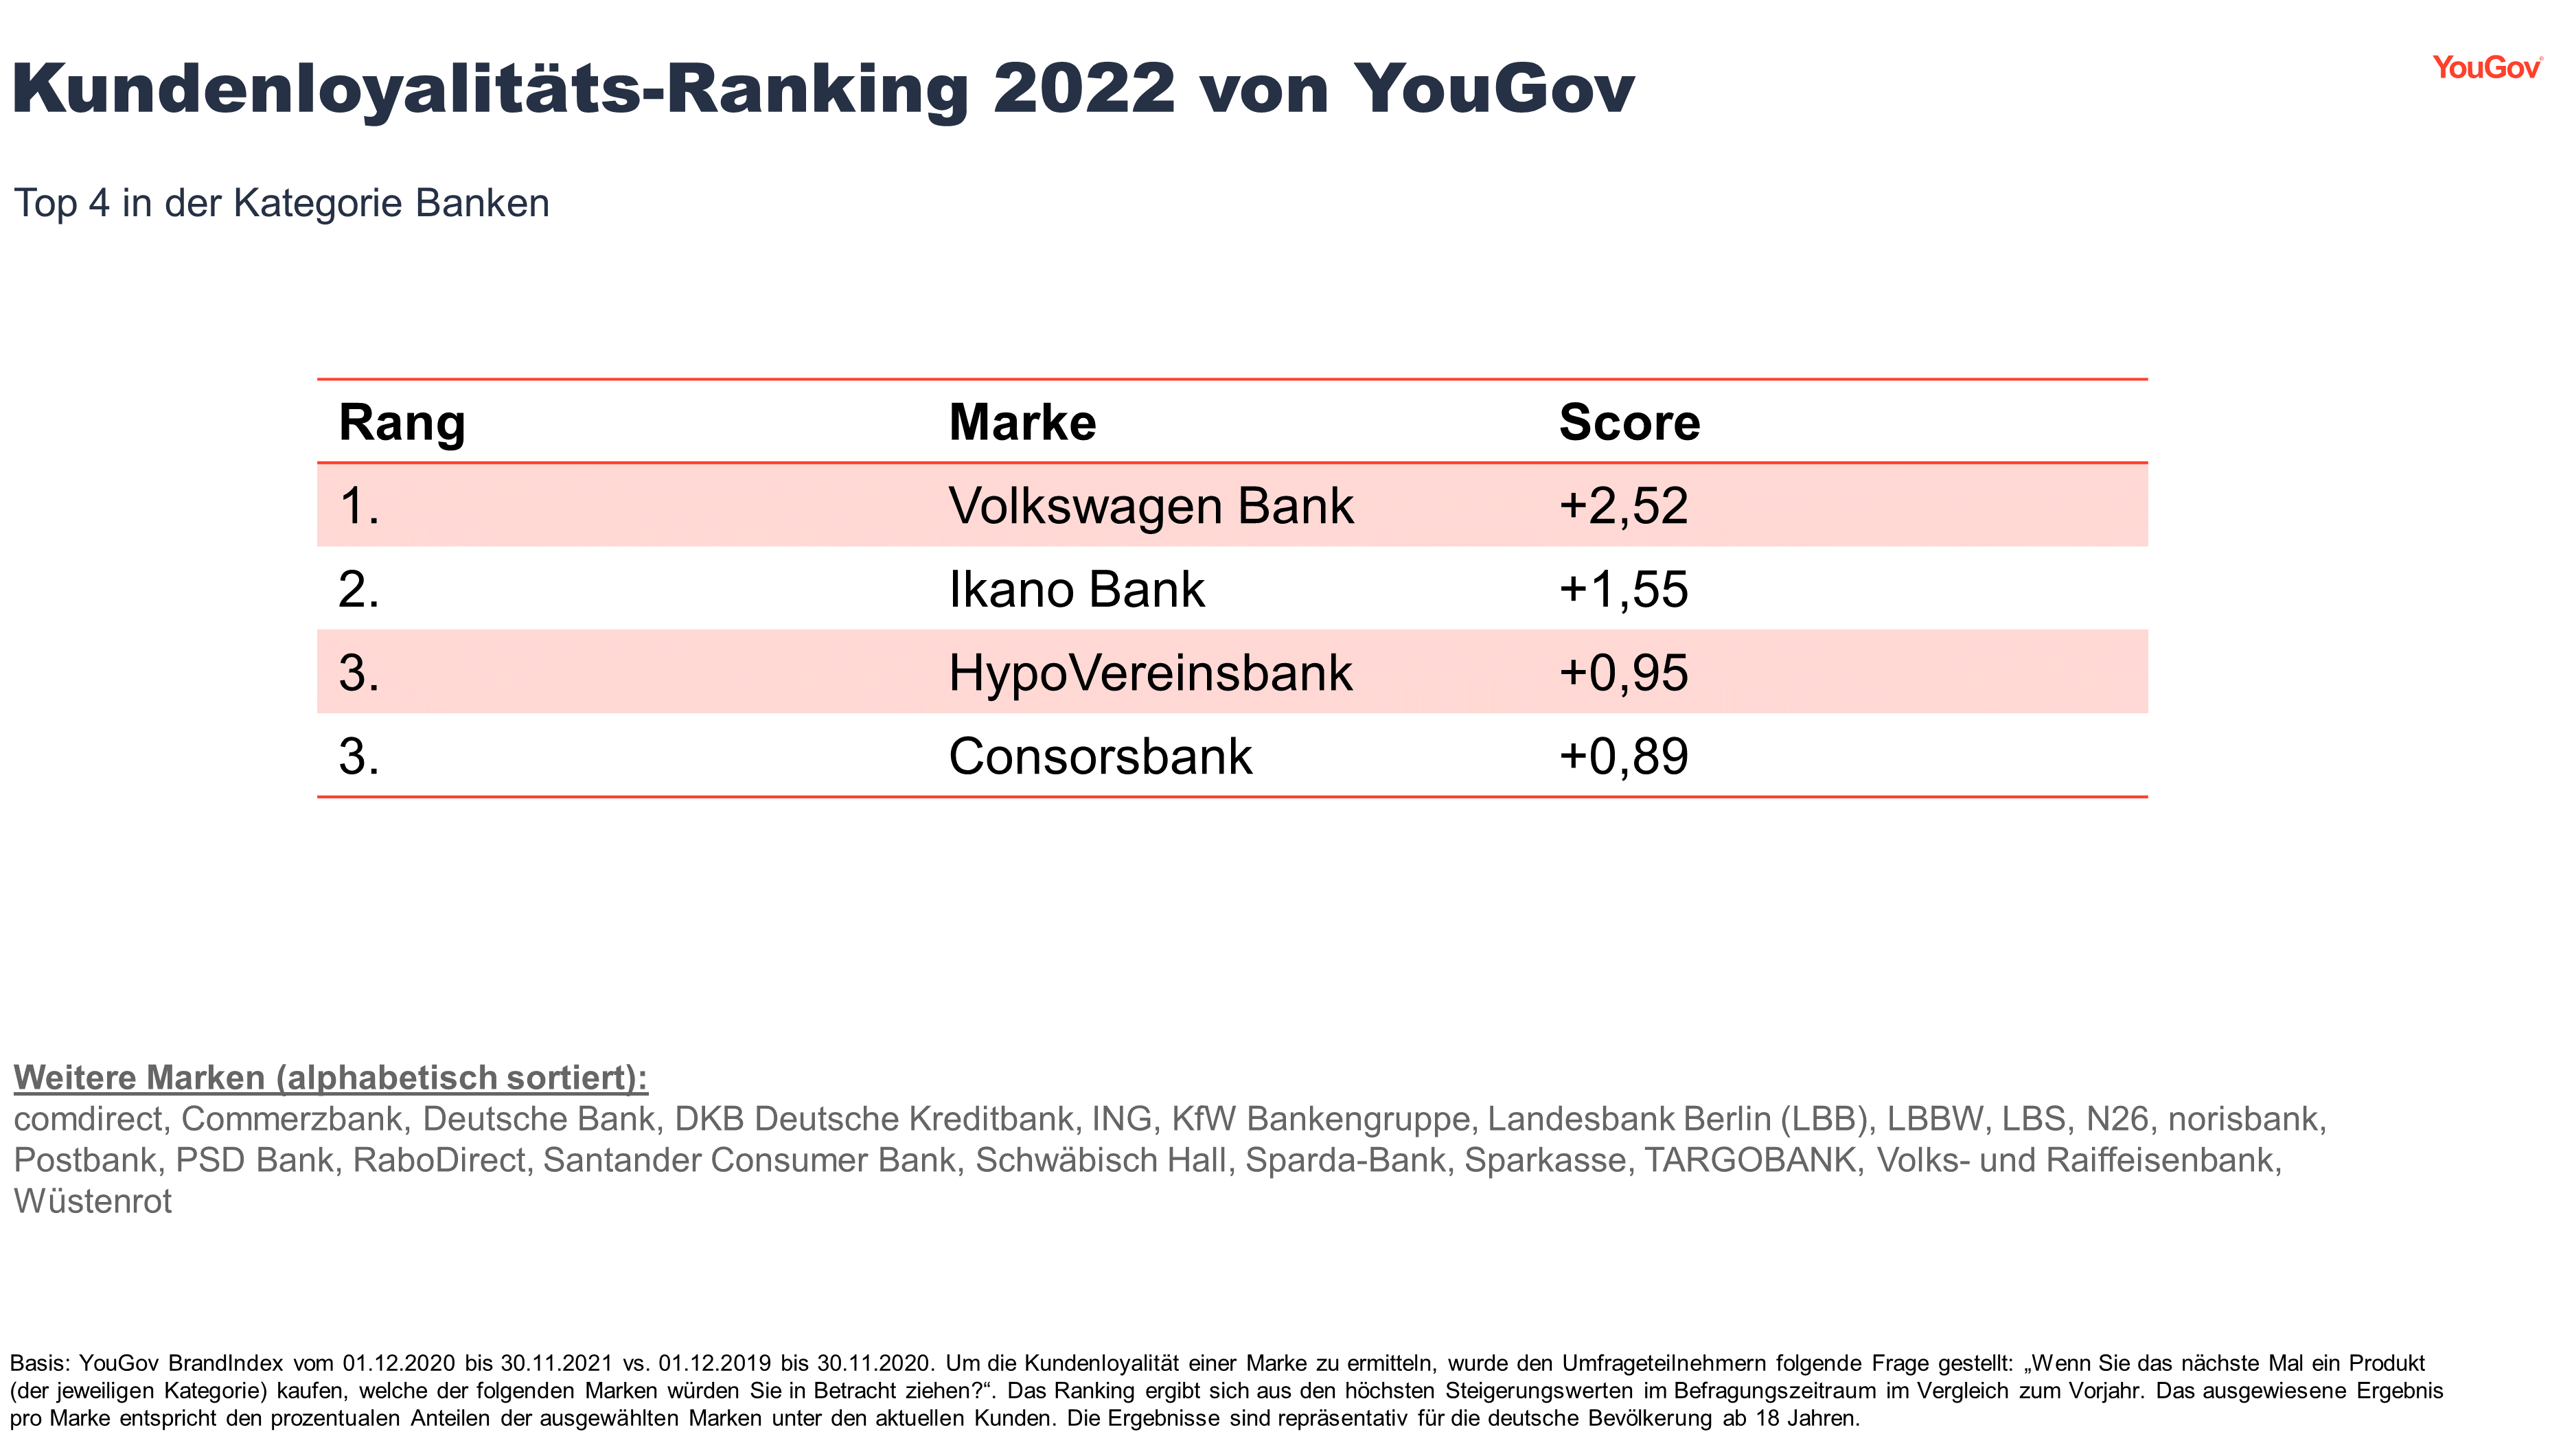 Volkswagen Bank ist Ranking-Sieger im Kundenloyalitäts-Ranking 2022 in der Kategorie Banken